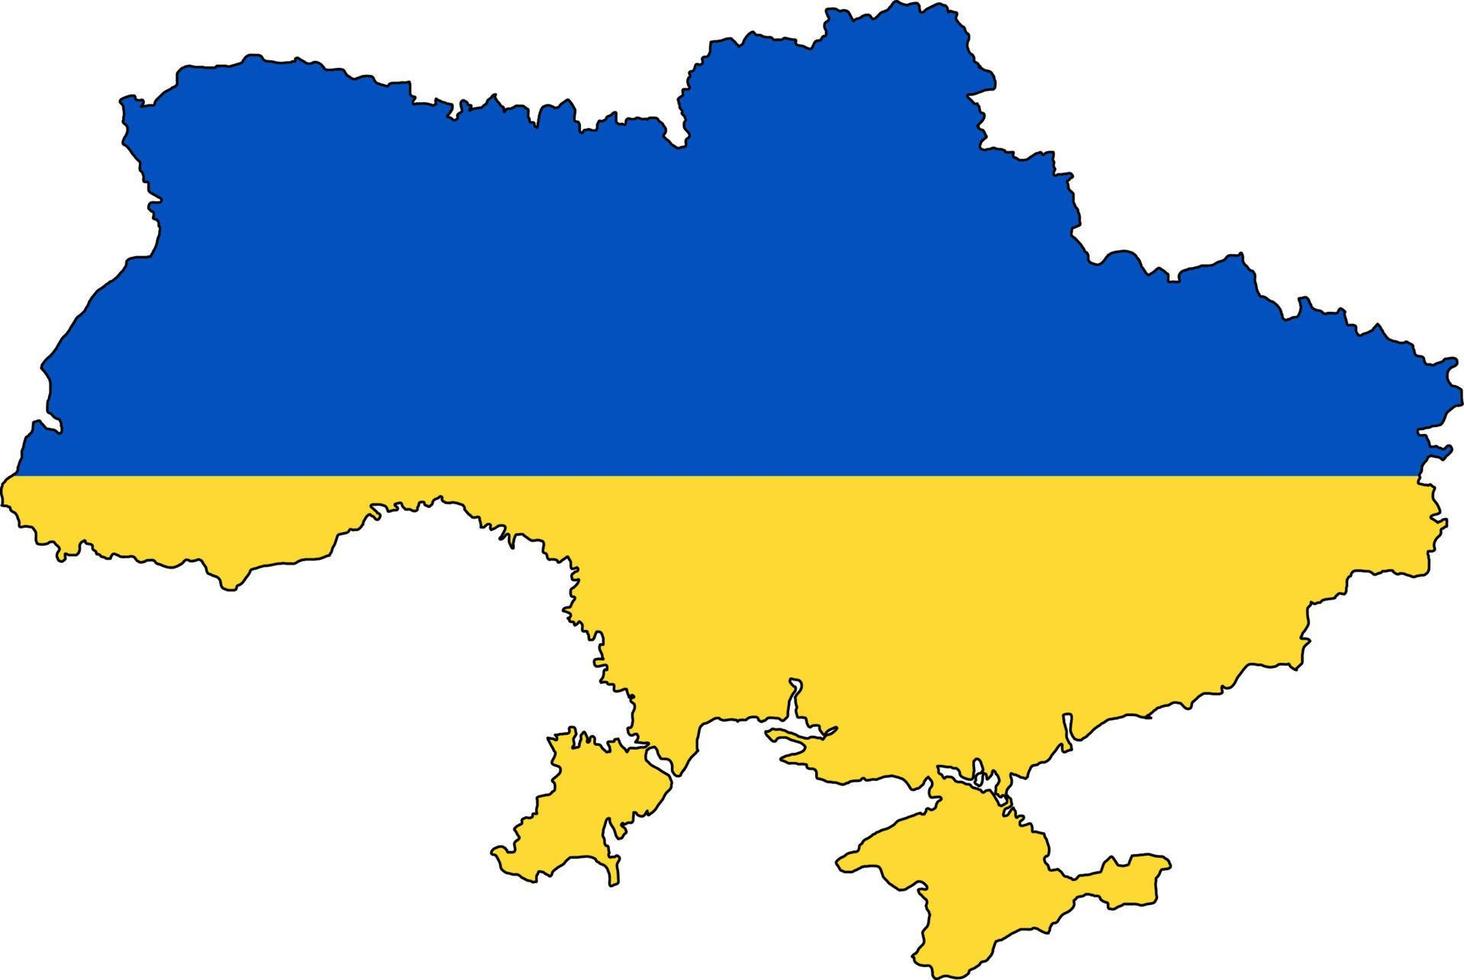 carte du pays ukrainien. couleurs du drapeau ukrainien. frontières du territoire avec la Crimée. illustration vectorielle bleu et jaune. vecteur